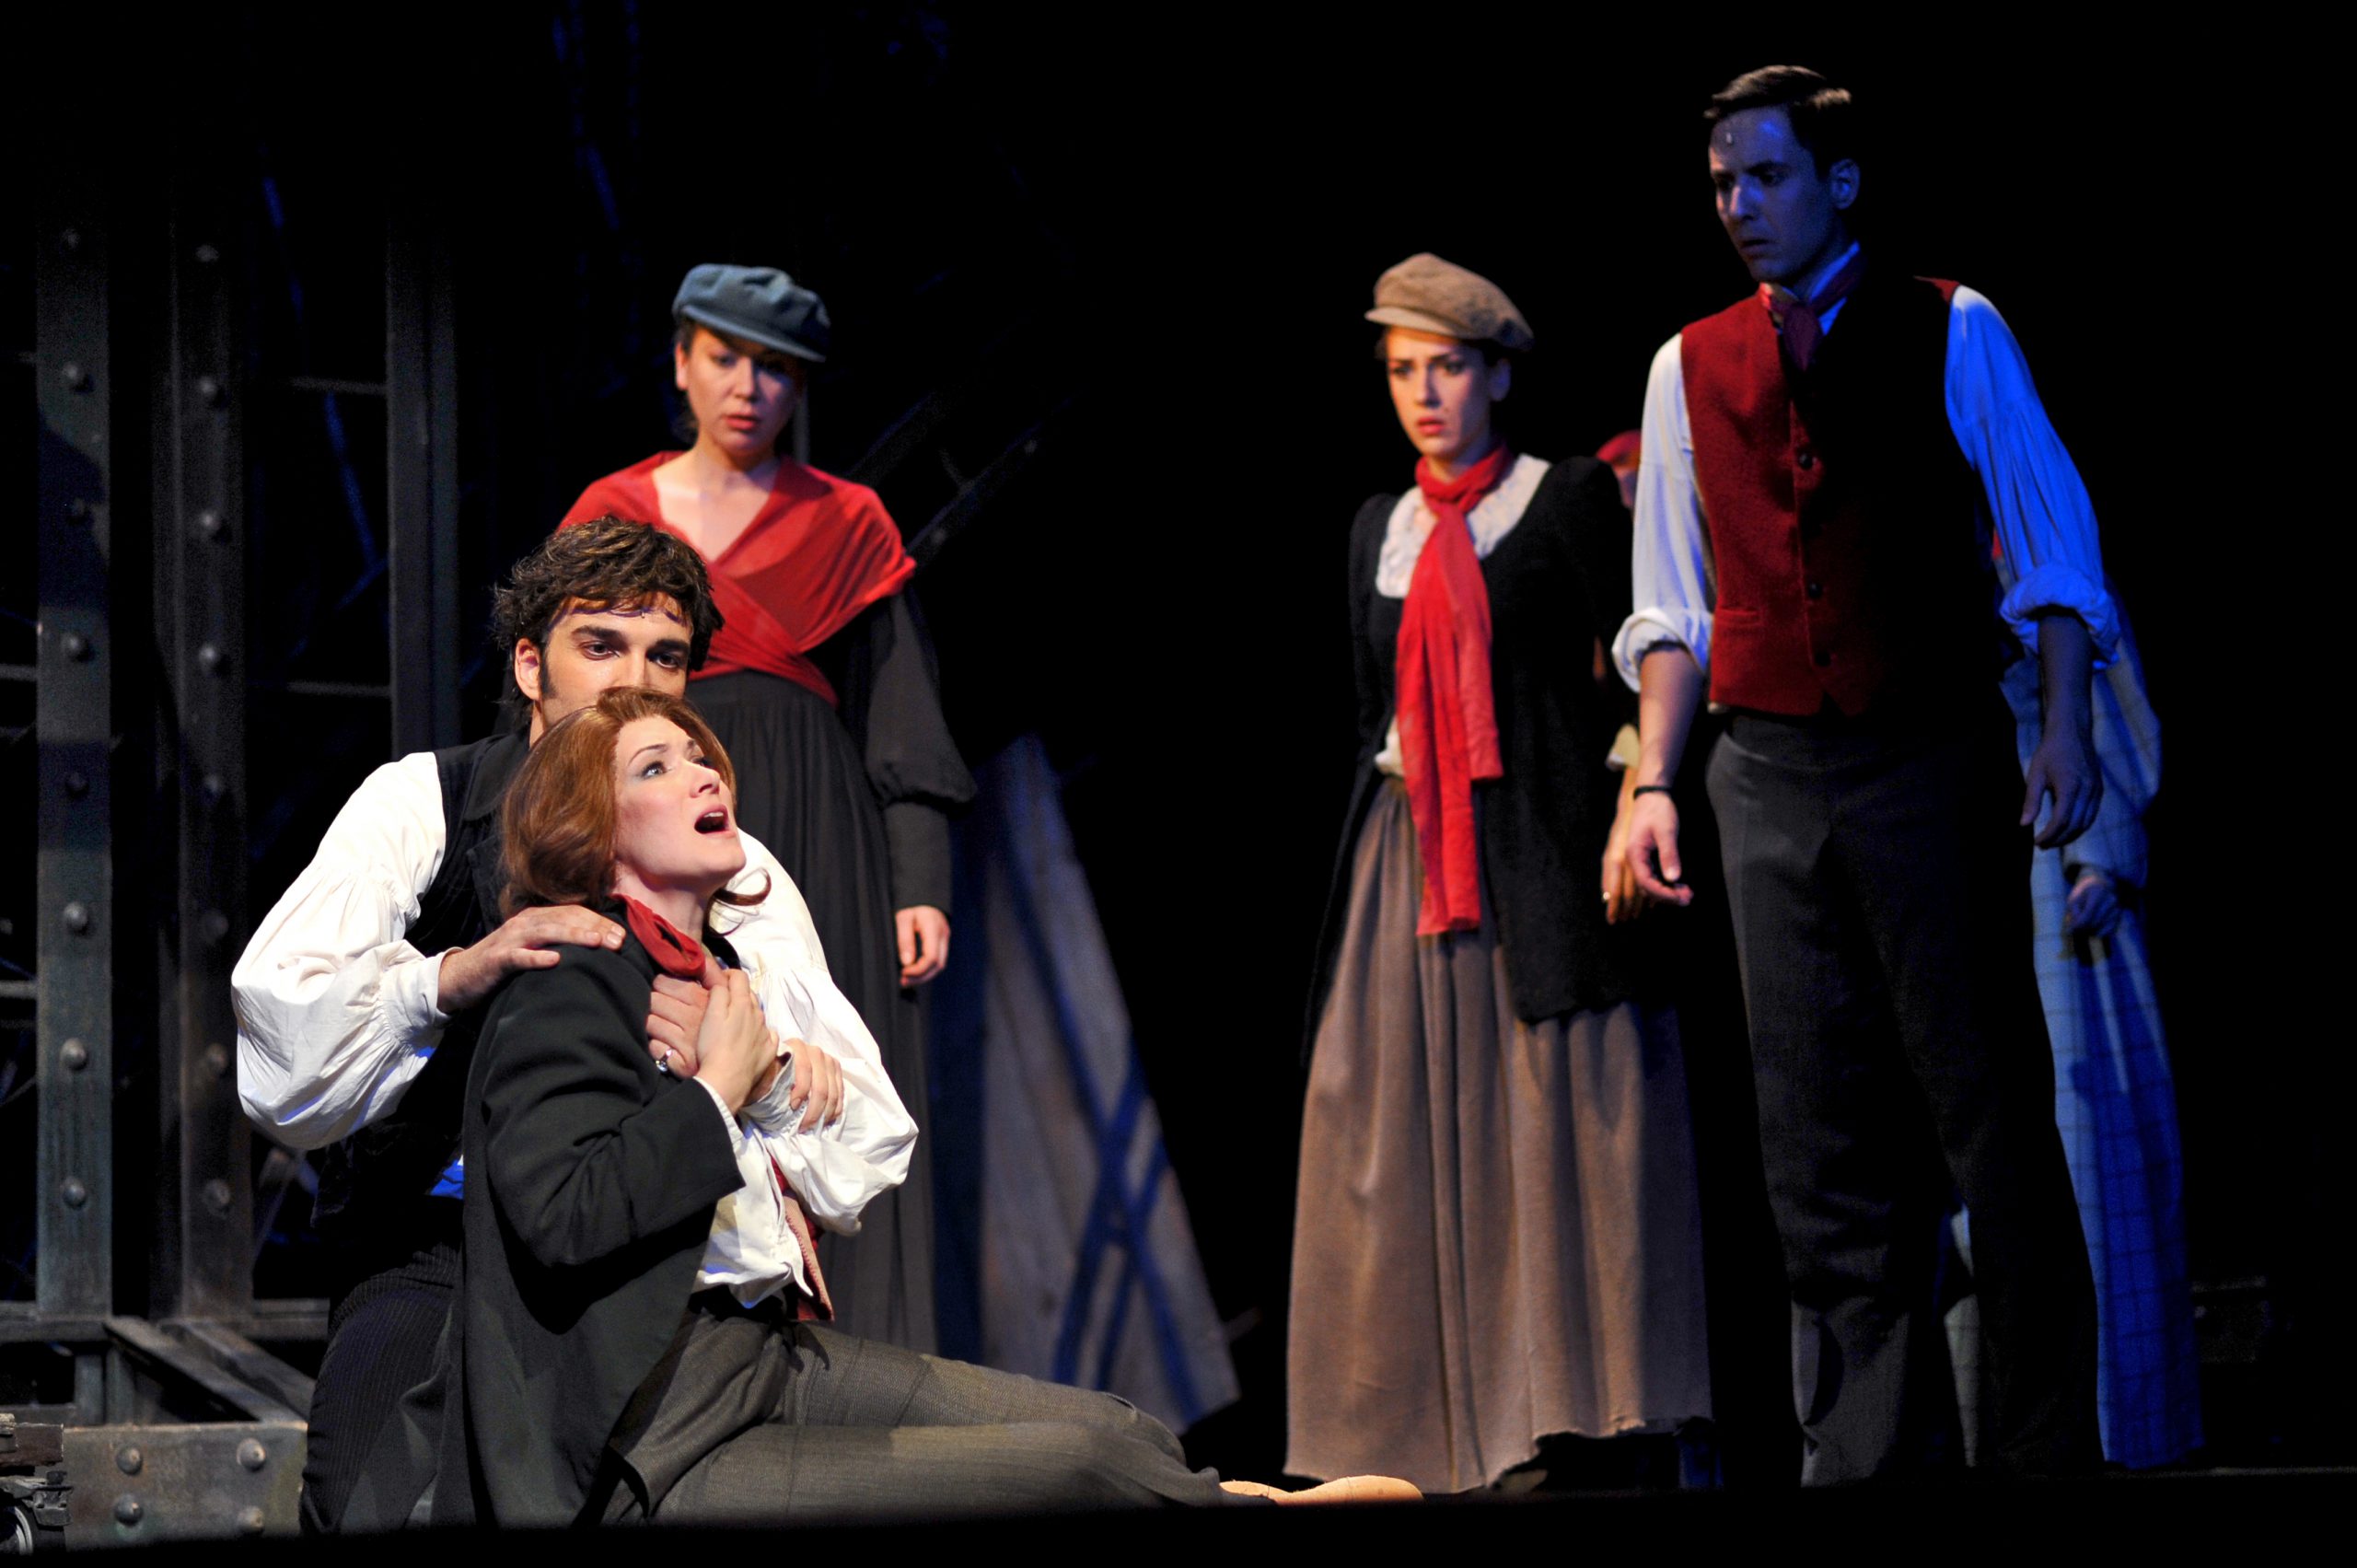 Branislava Podrumac as Éponine in the musical Les Misérables